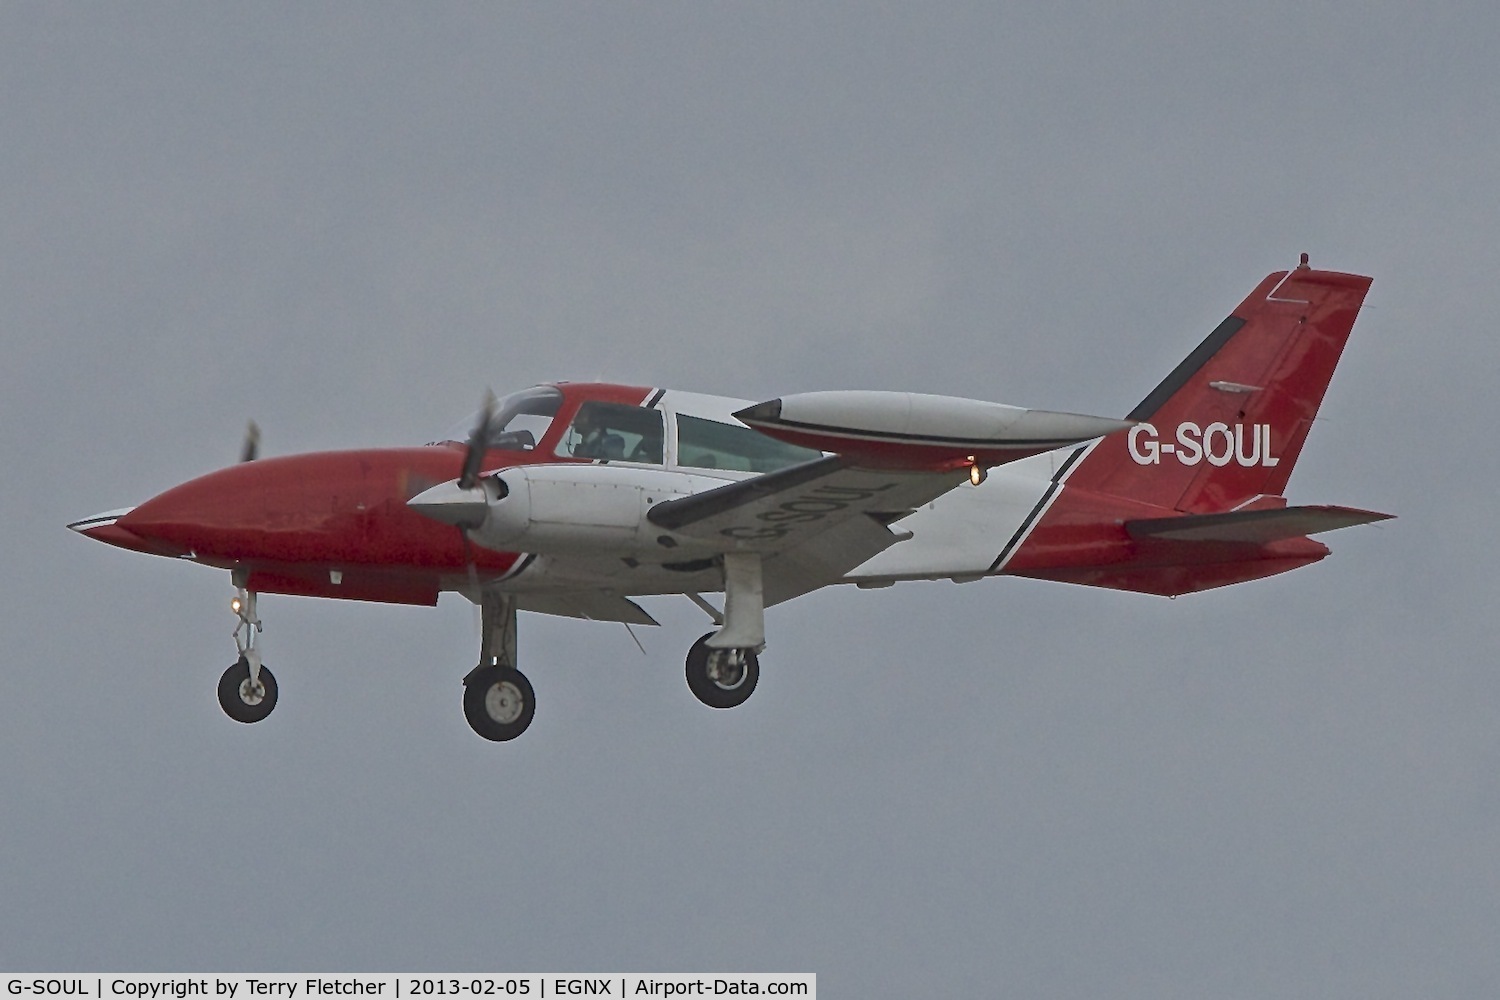 G-SOUL, 1975 Cessna 310R C/N 310R-0140, 1975 Cessna 310R, c/n: 310R-0140
at East Midlands